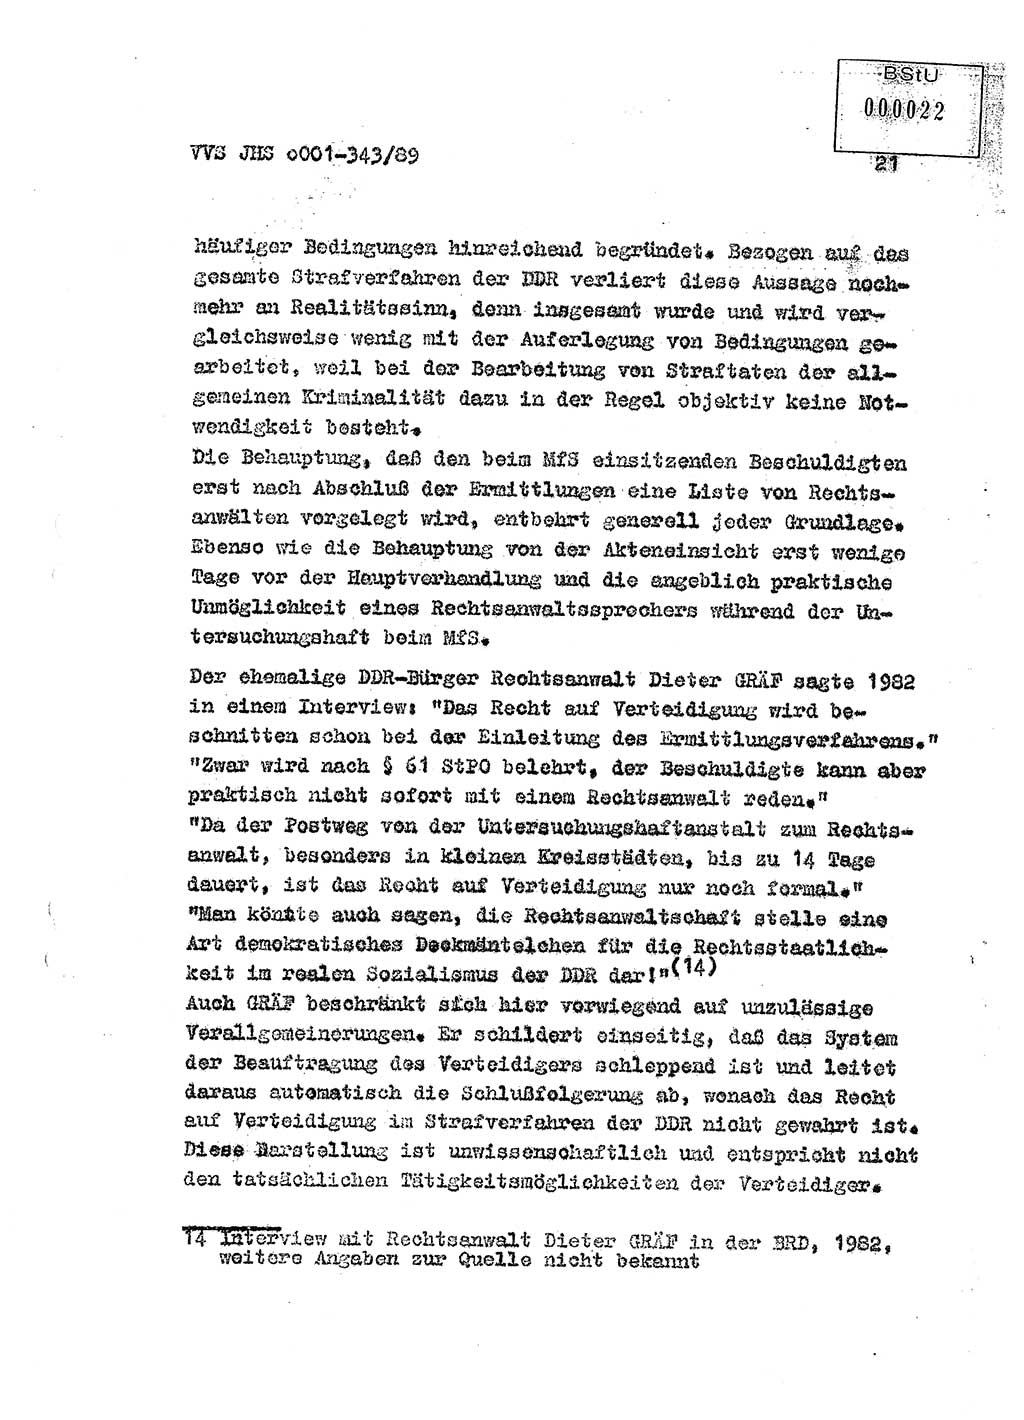 Diplomarbeit Offiziersschüler Axel Henschke (HA Ⅸ/9), Ministerium für Staatssicherheit (MfS) [Deutsche Demokratische Republik (DDR)], Juristische Hochschule (JHS), Vertrauliche Verschlußsache (VVS) o001-343/89, Potsdam 1989, Seite 21 (Dipl.-Arb. MfS DDR JHS VVS o001-343/89 1989, S. 21)